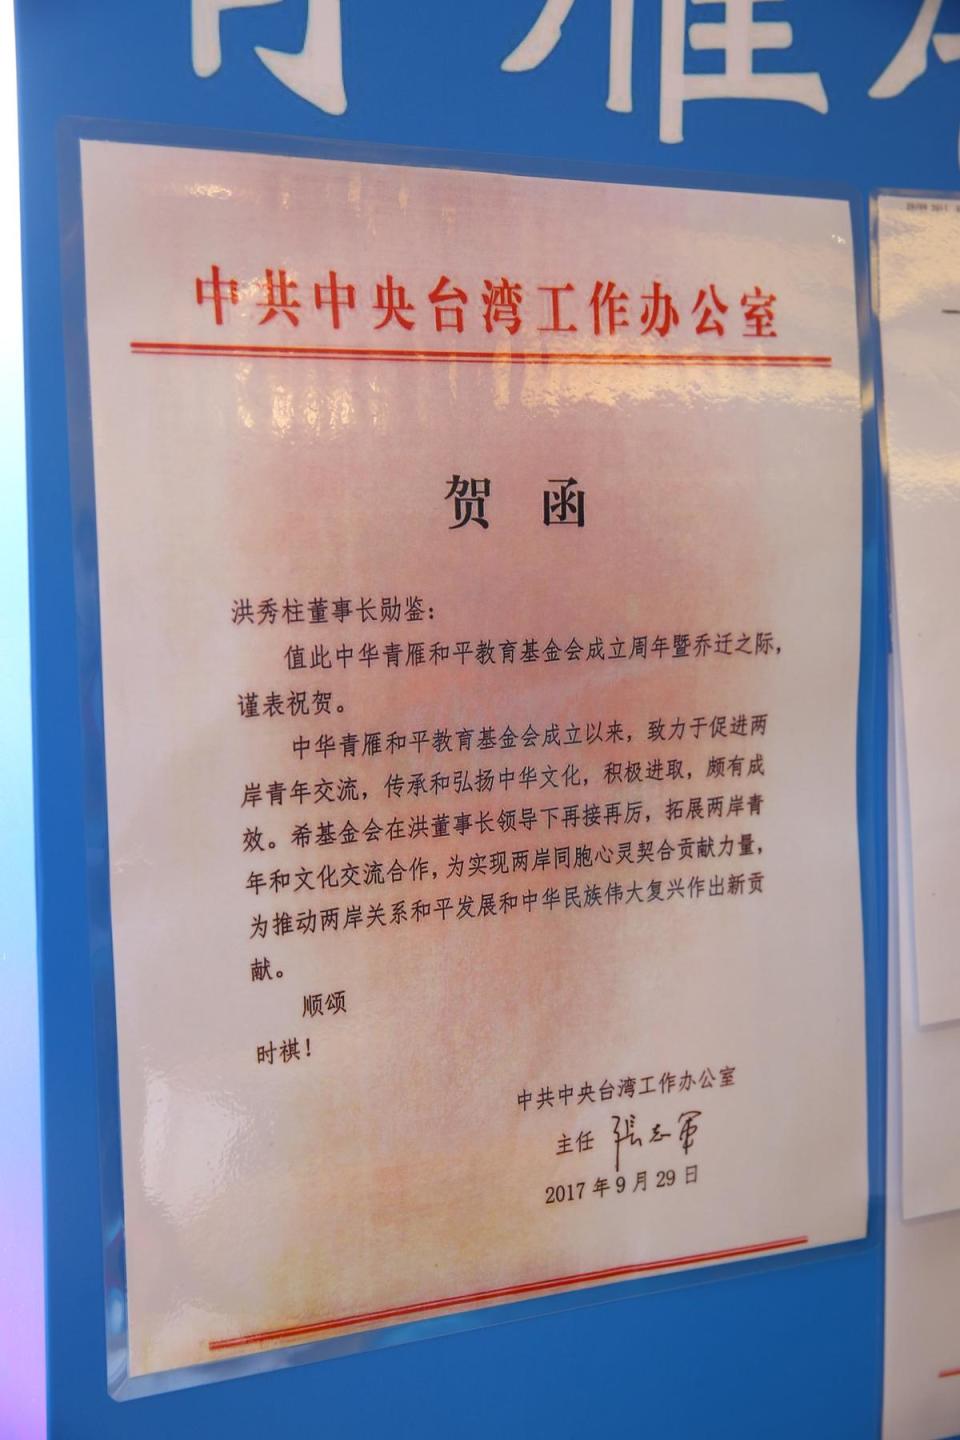 中國大陸國台辦主任張志軍賀函。